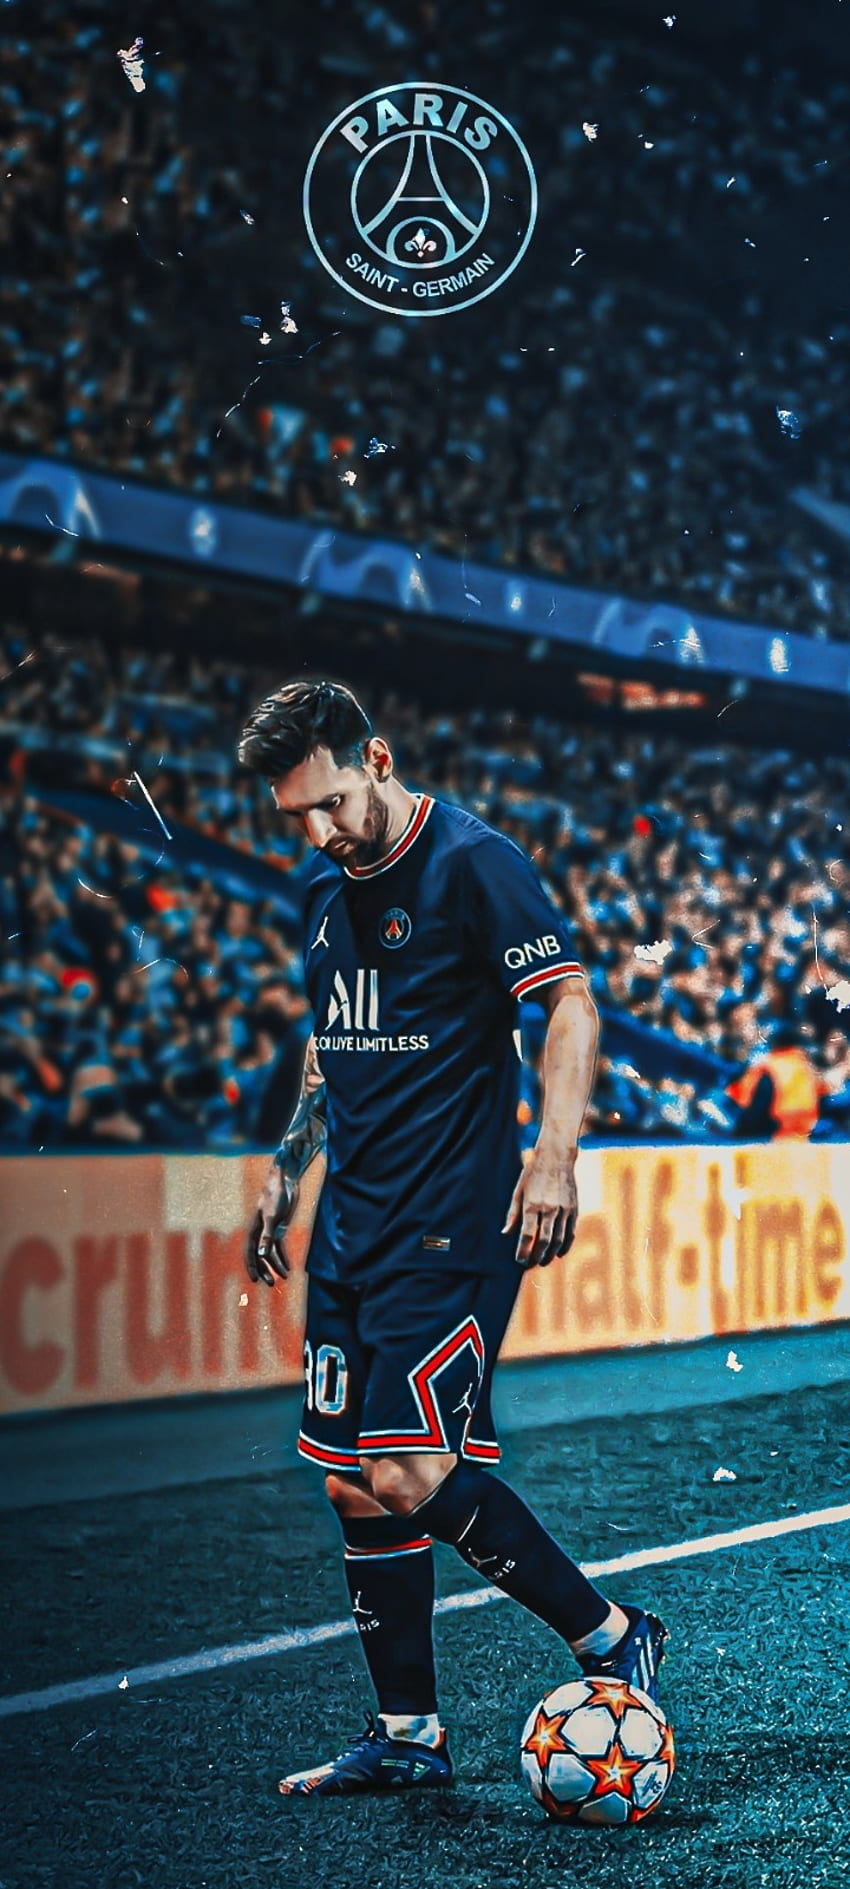 Với hình nền điện thoại Messi PSG, bạn không chỉ thể hiện được sự hâm mộ với ngôi sao bóng đá hàng đầu Lionel Messi mà còn là tình yêu của bạn đối với PSG. Thiết kế tinh tế, hình ảnh sắc nét sẽ khiến cho màn hình điện thoại của bạn trở nên sang trọng hơn, không chỉ là một hình nền bình thường mà còn tạo nên điểm nhấn đặc biệt.